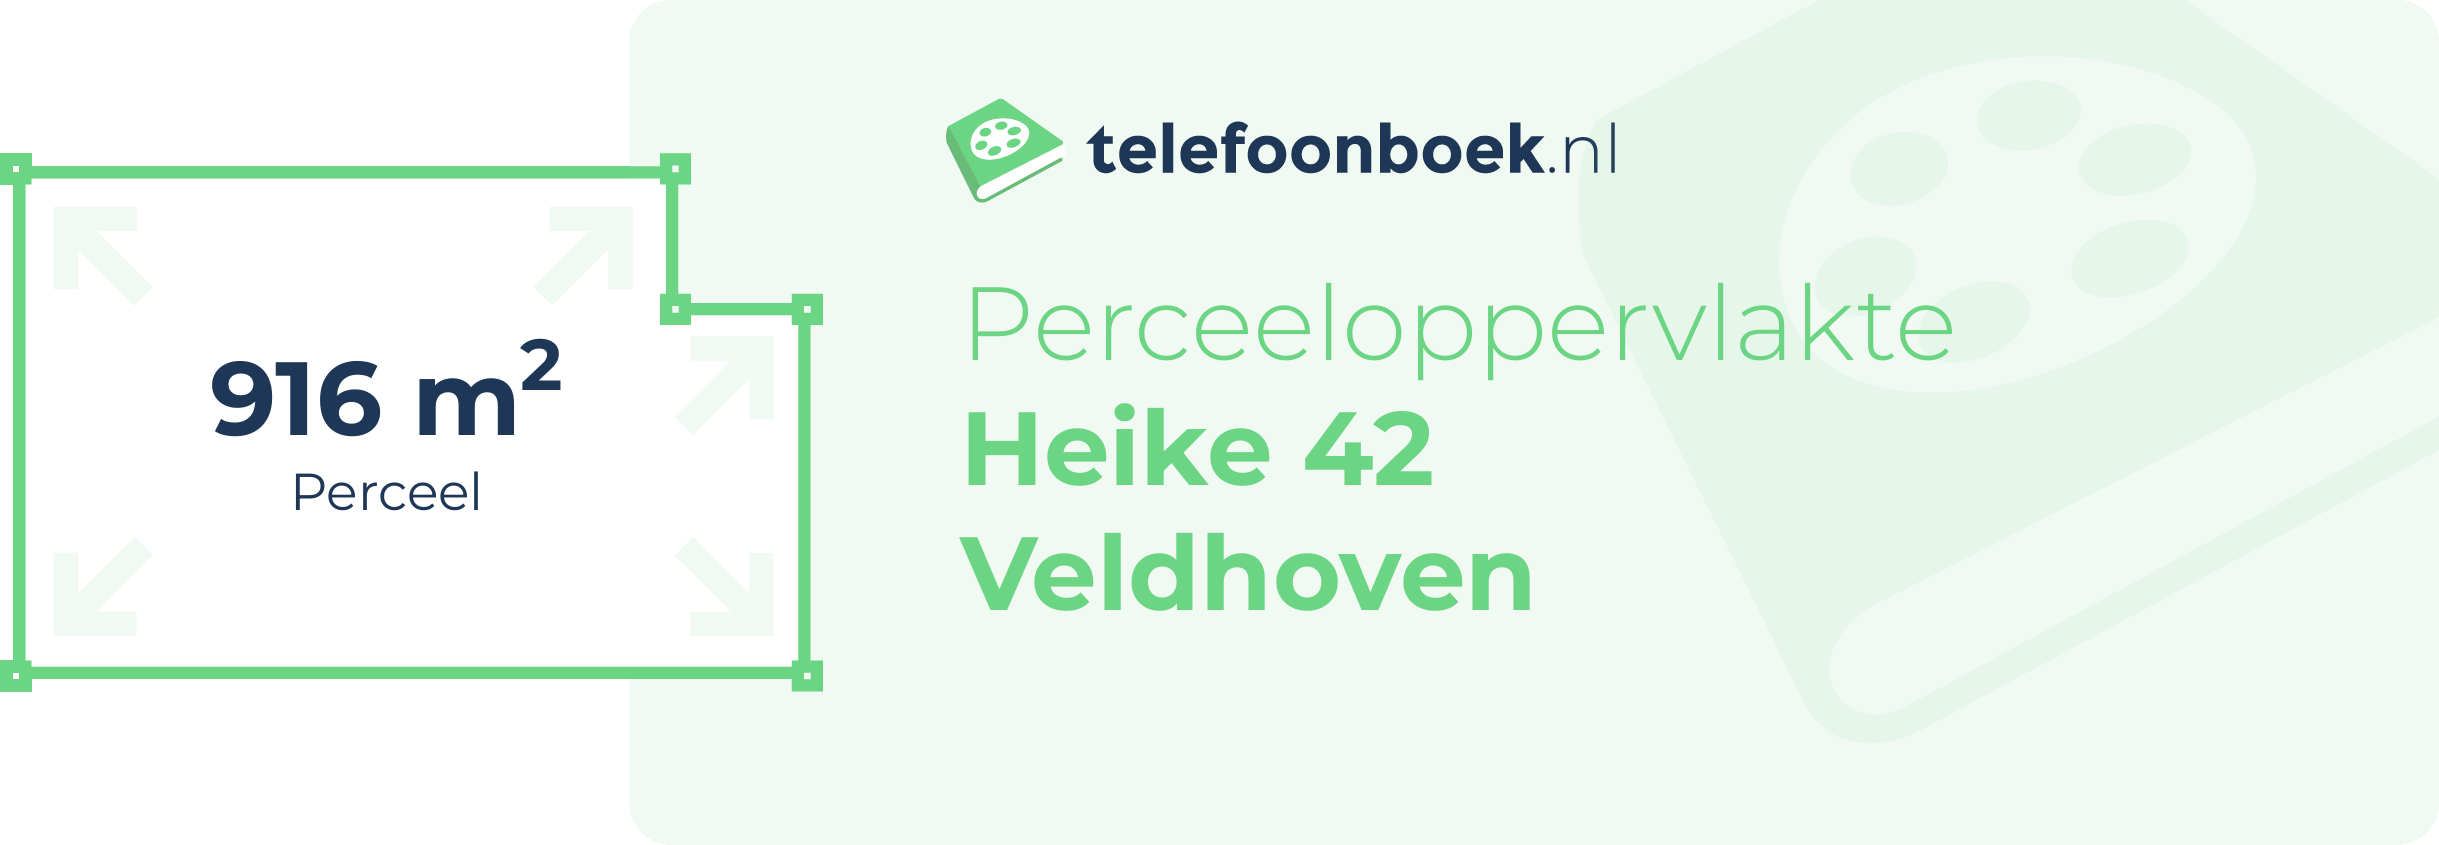 Perceeloppervlakte Heike 42 Veldhoven